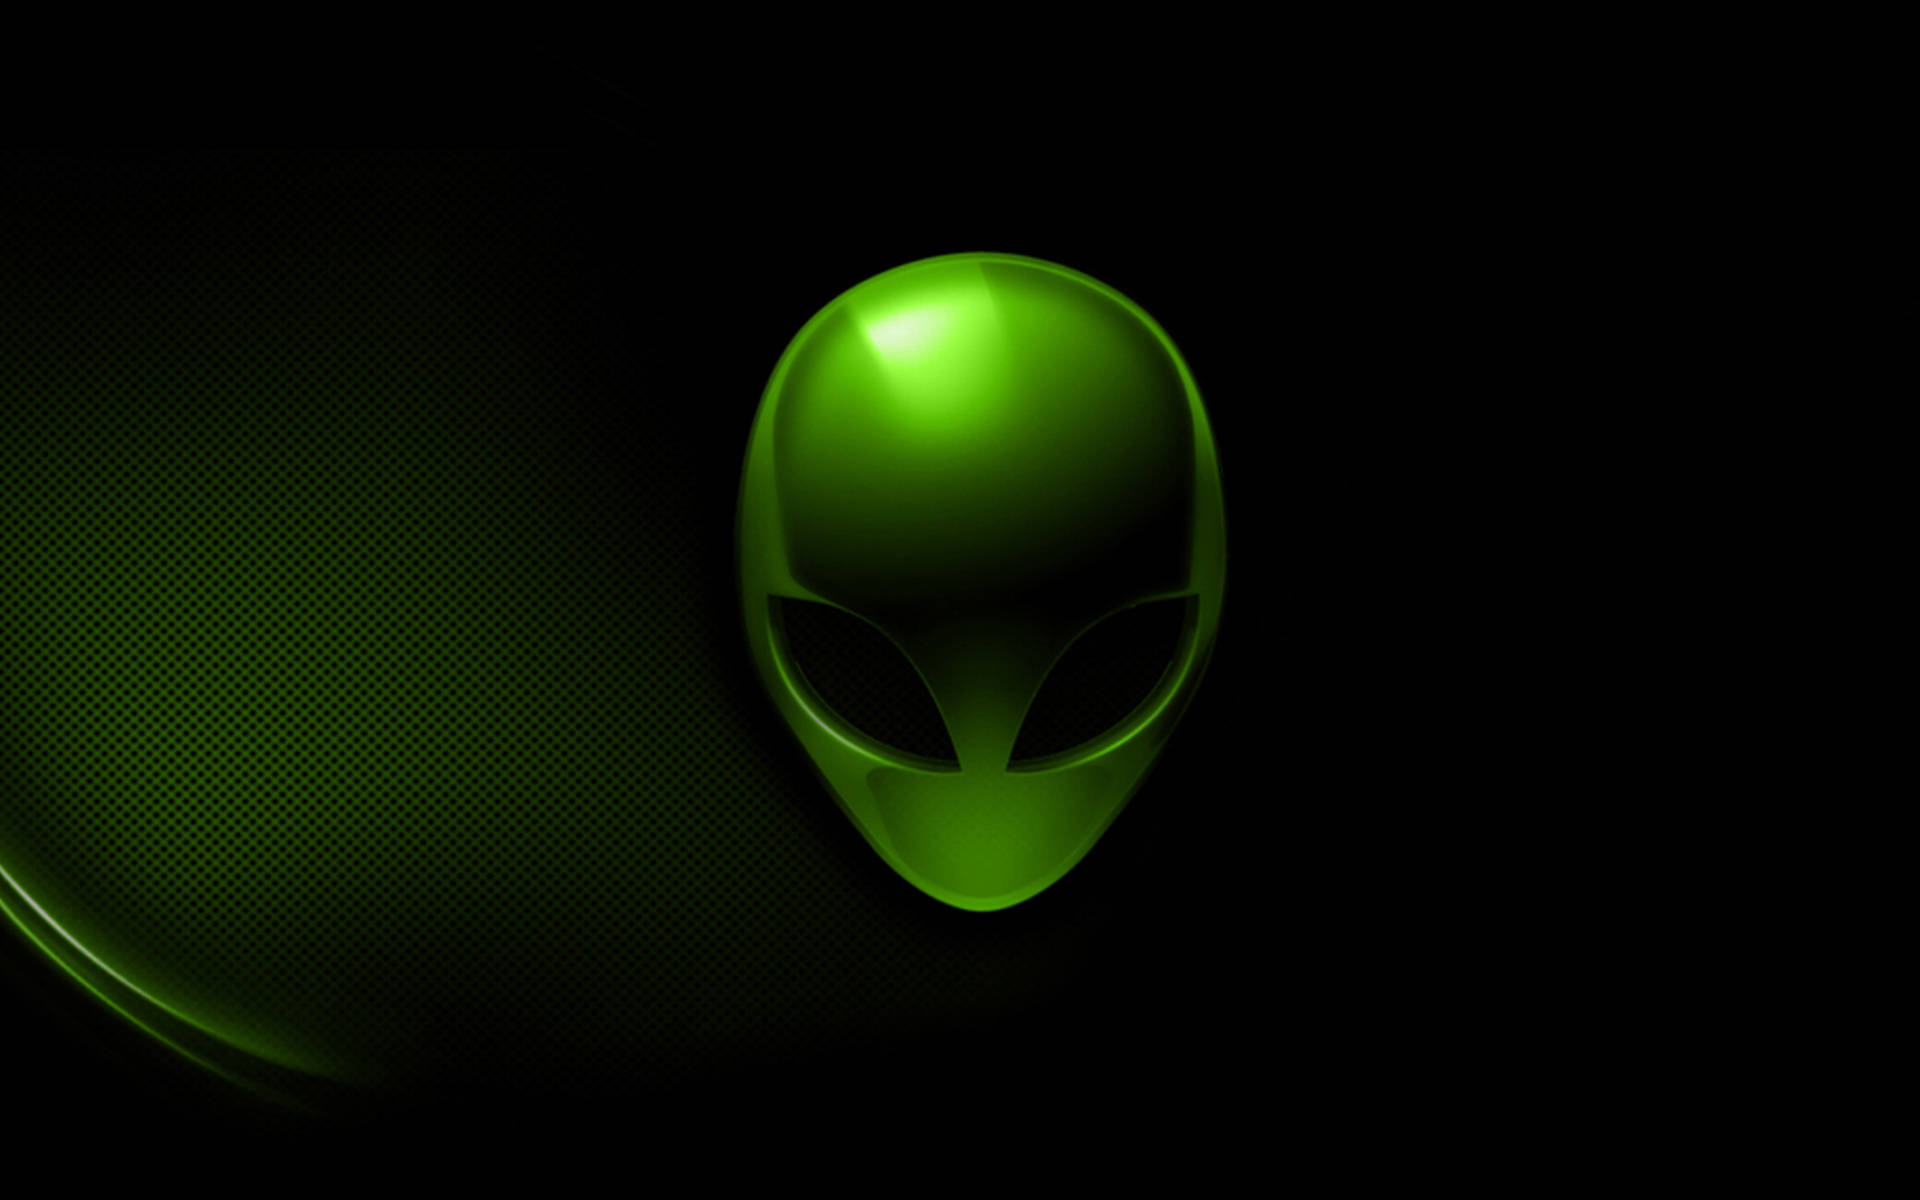 Alienware Default Green Logo Wallpaper